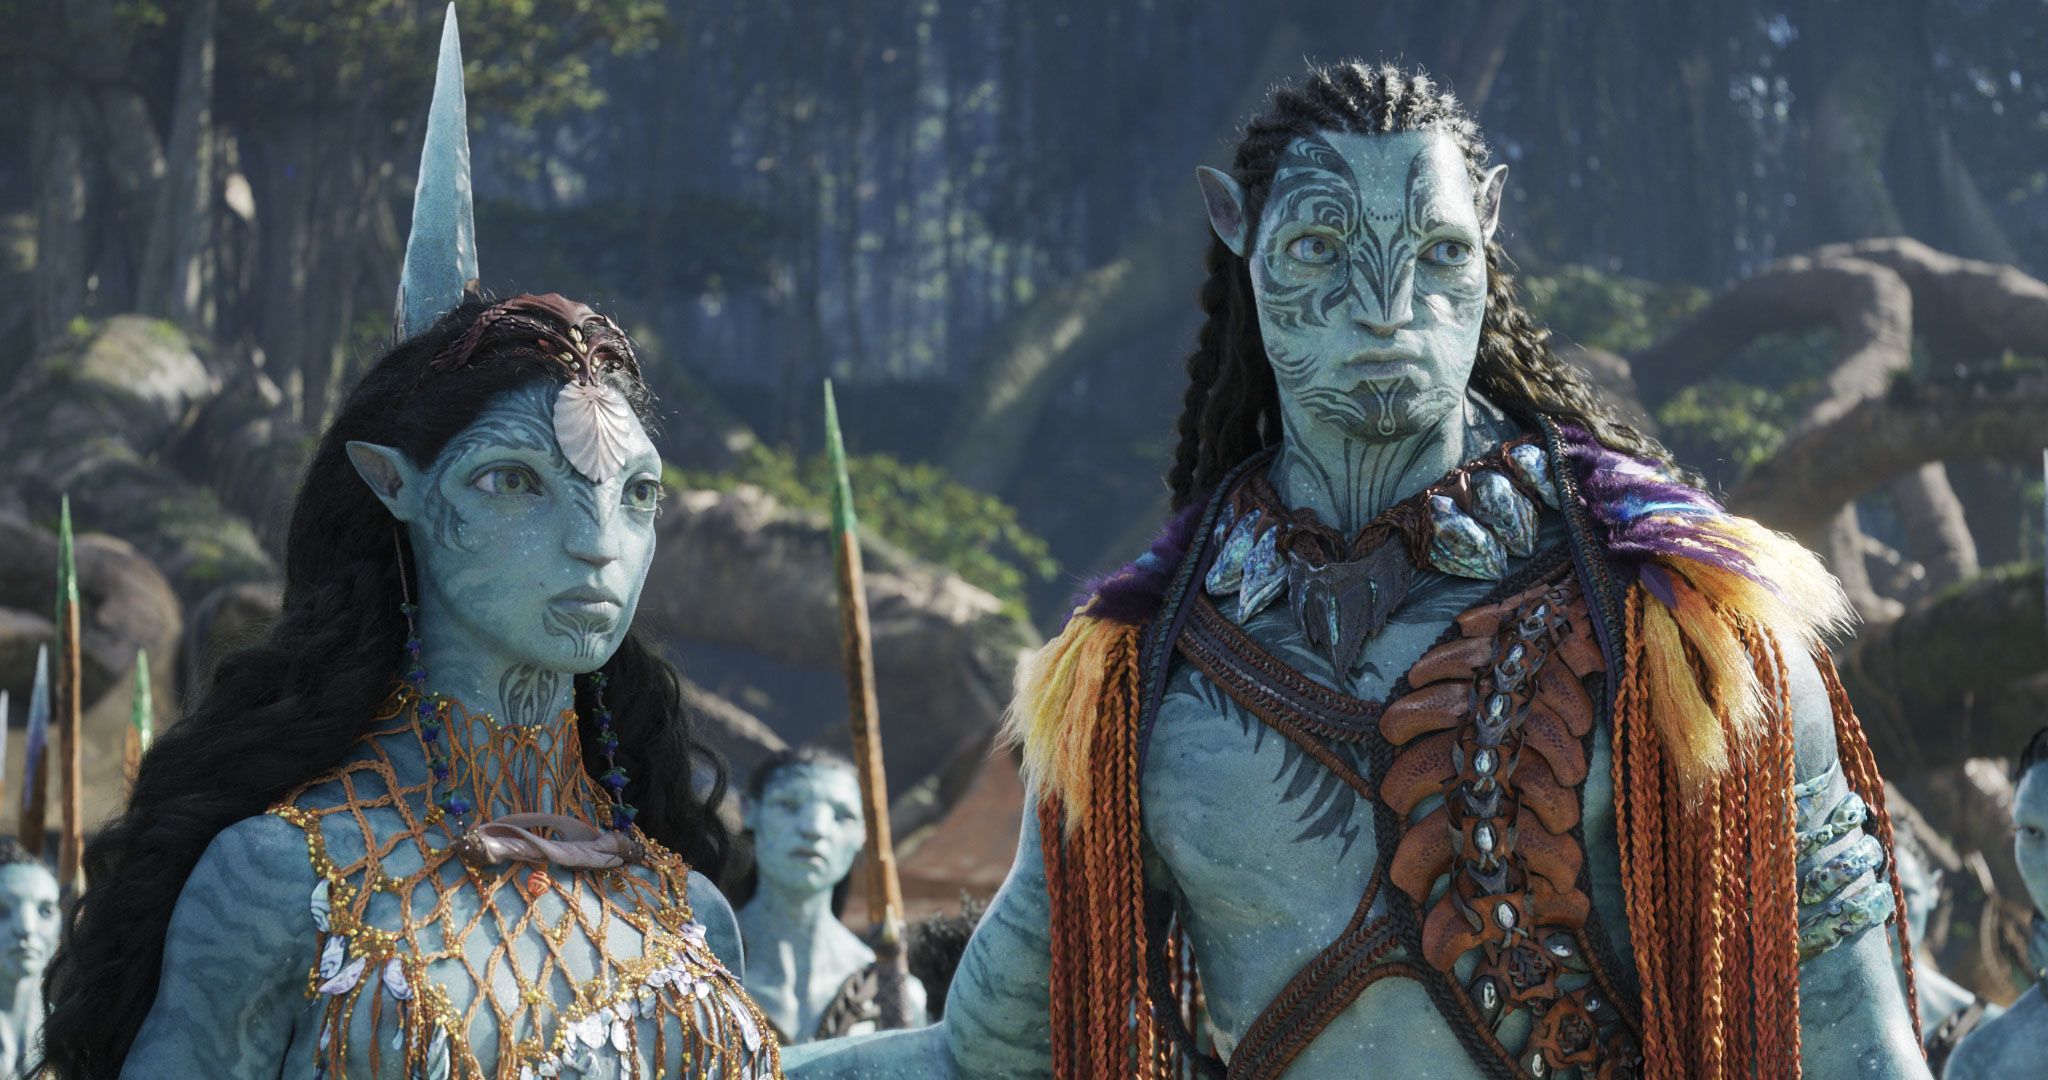 Avatar 2: Sau một thập kỷ chờ đợi, phần tiếp theo của bộ phim bom tấn Avatar đã chính thức ra mắt. Với những cảnh quay đẹp mắt và kỹ xảo hấp dẫn, Avatar 2 hứa hẹn sẽ mang đến cho khán giả gấp đôi niềm vui so với phần một.